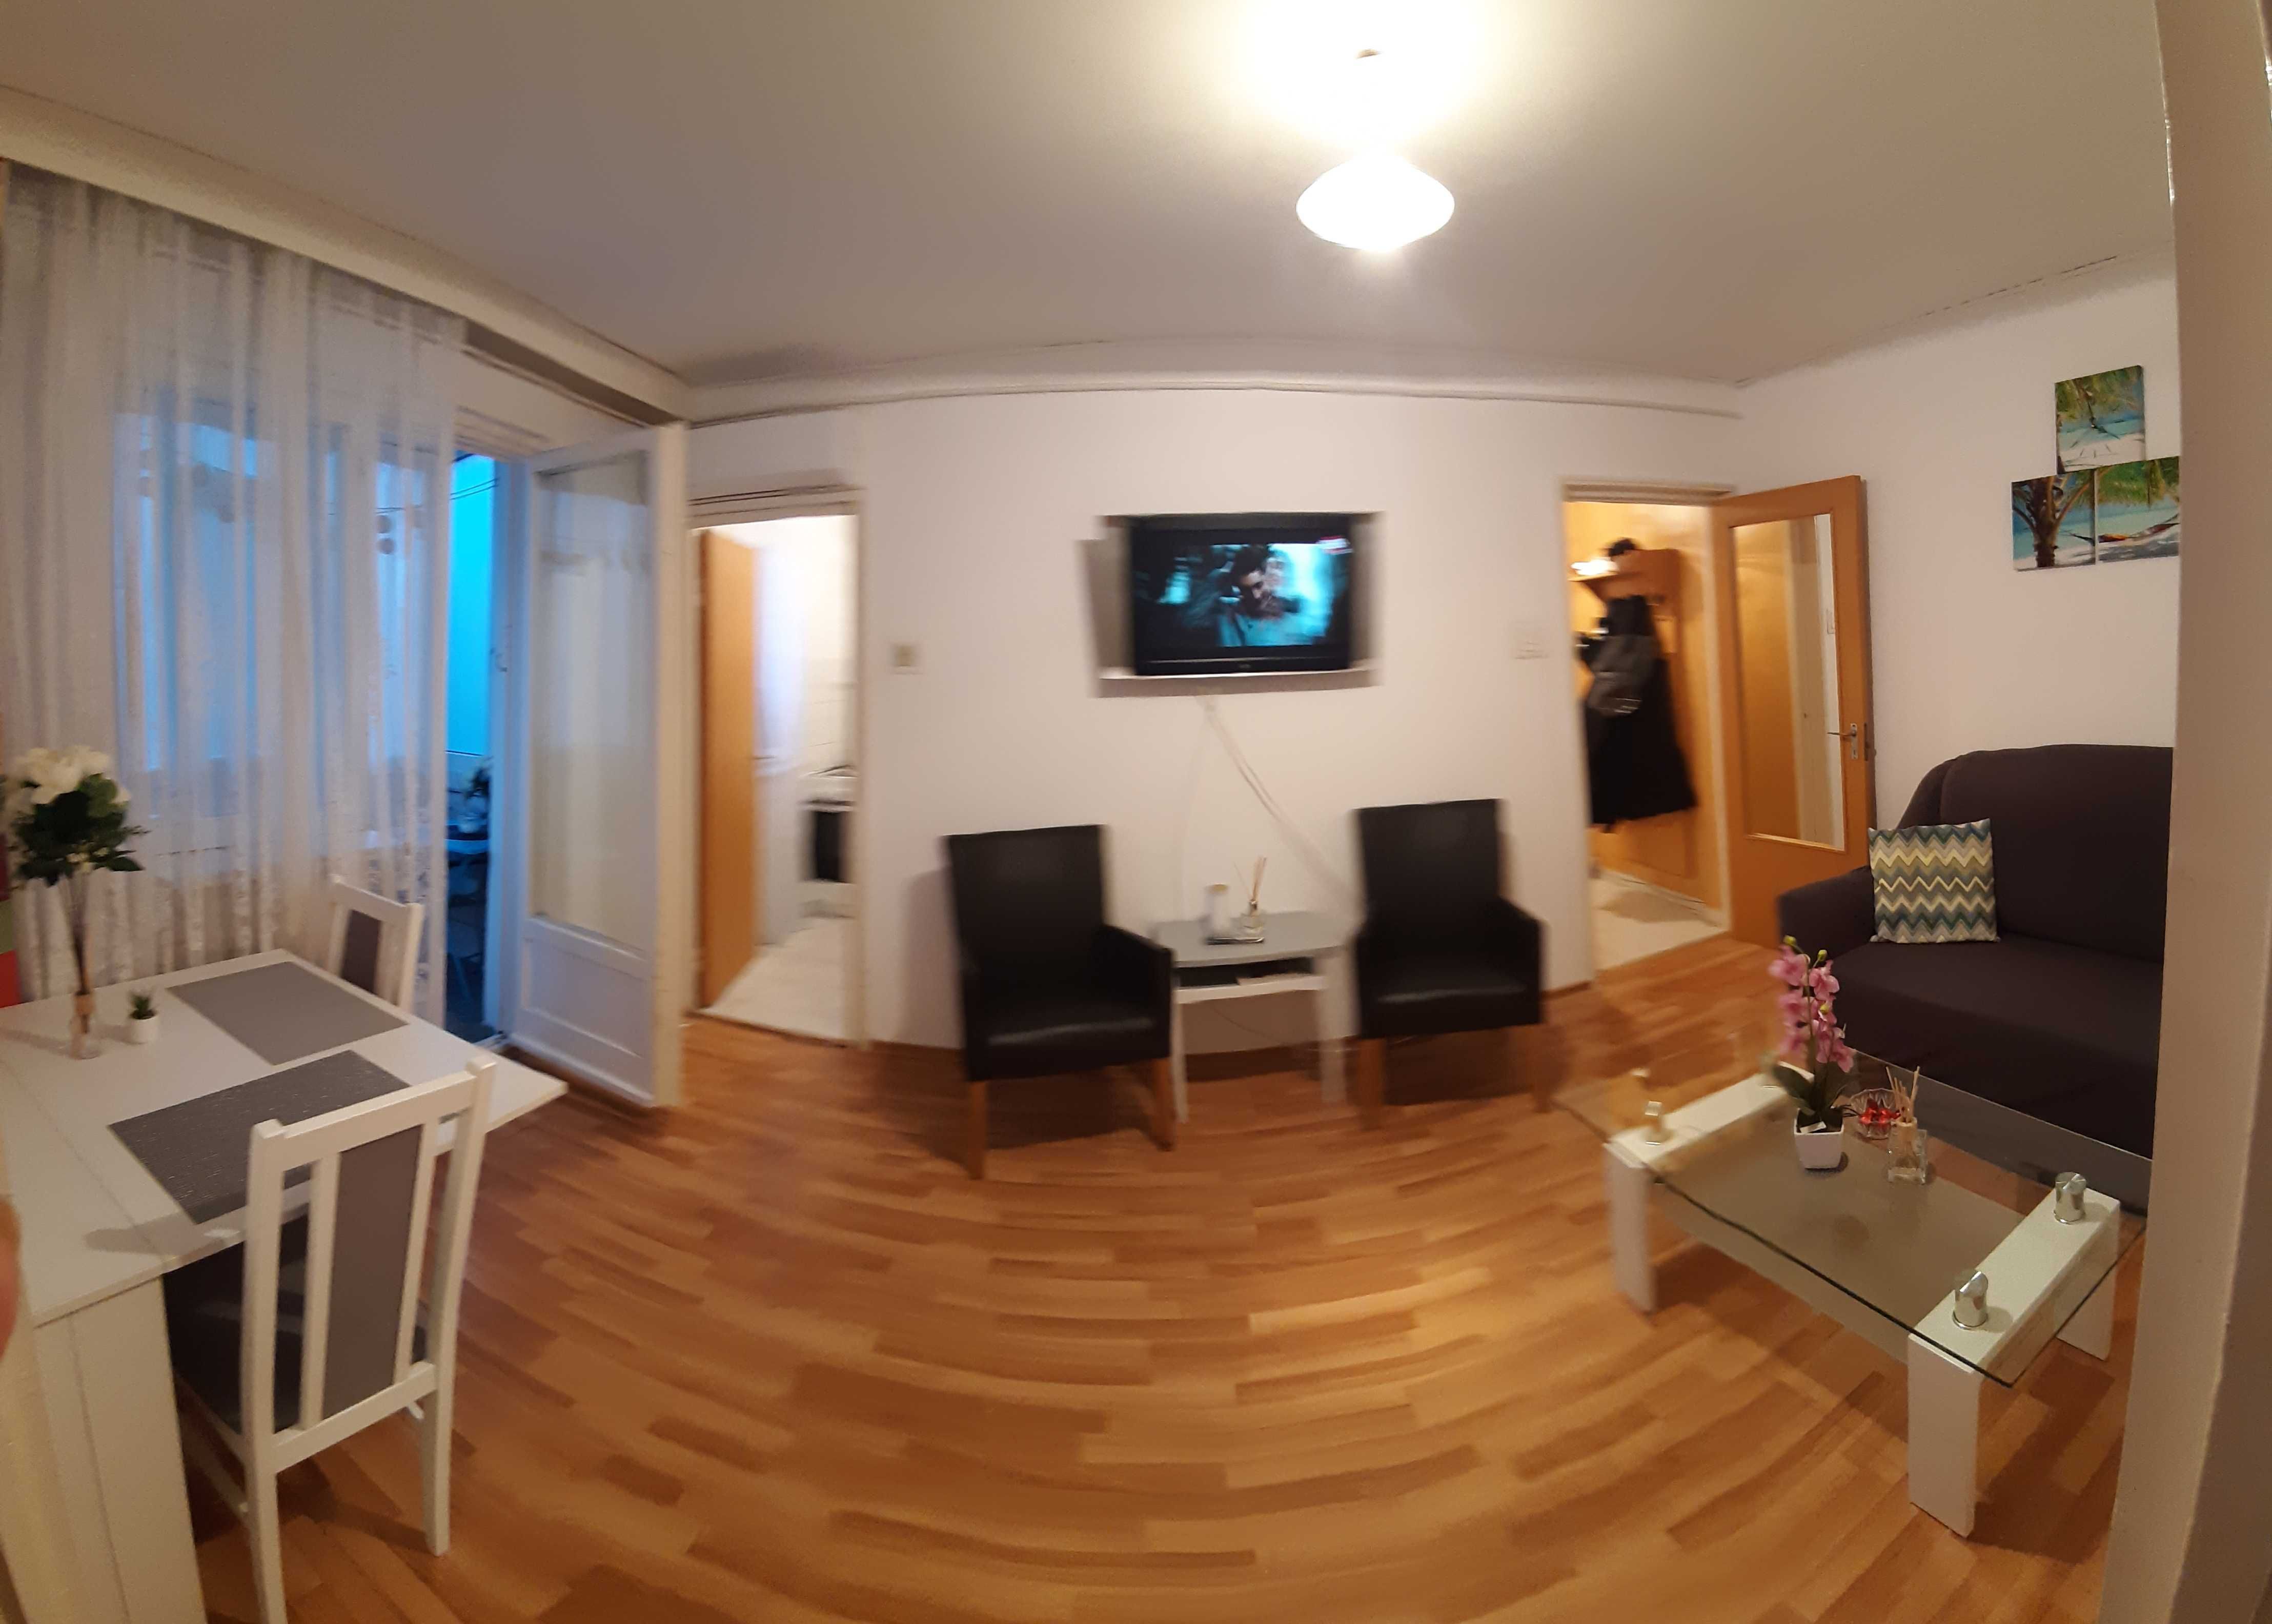 Cazare in regim hotelier, apartament 2 camere, Satul de Vacanţă/Mamaia